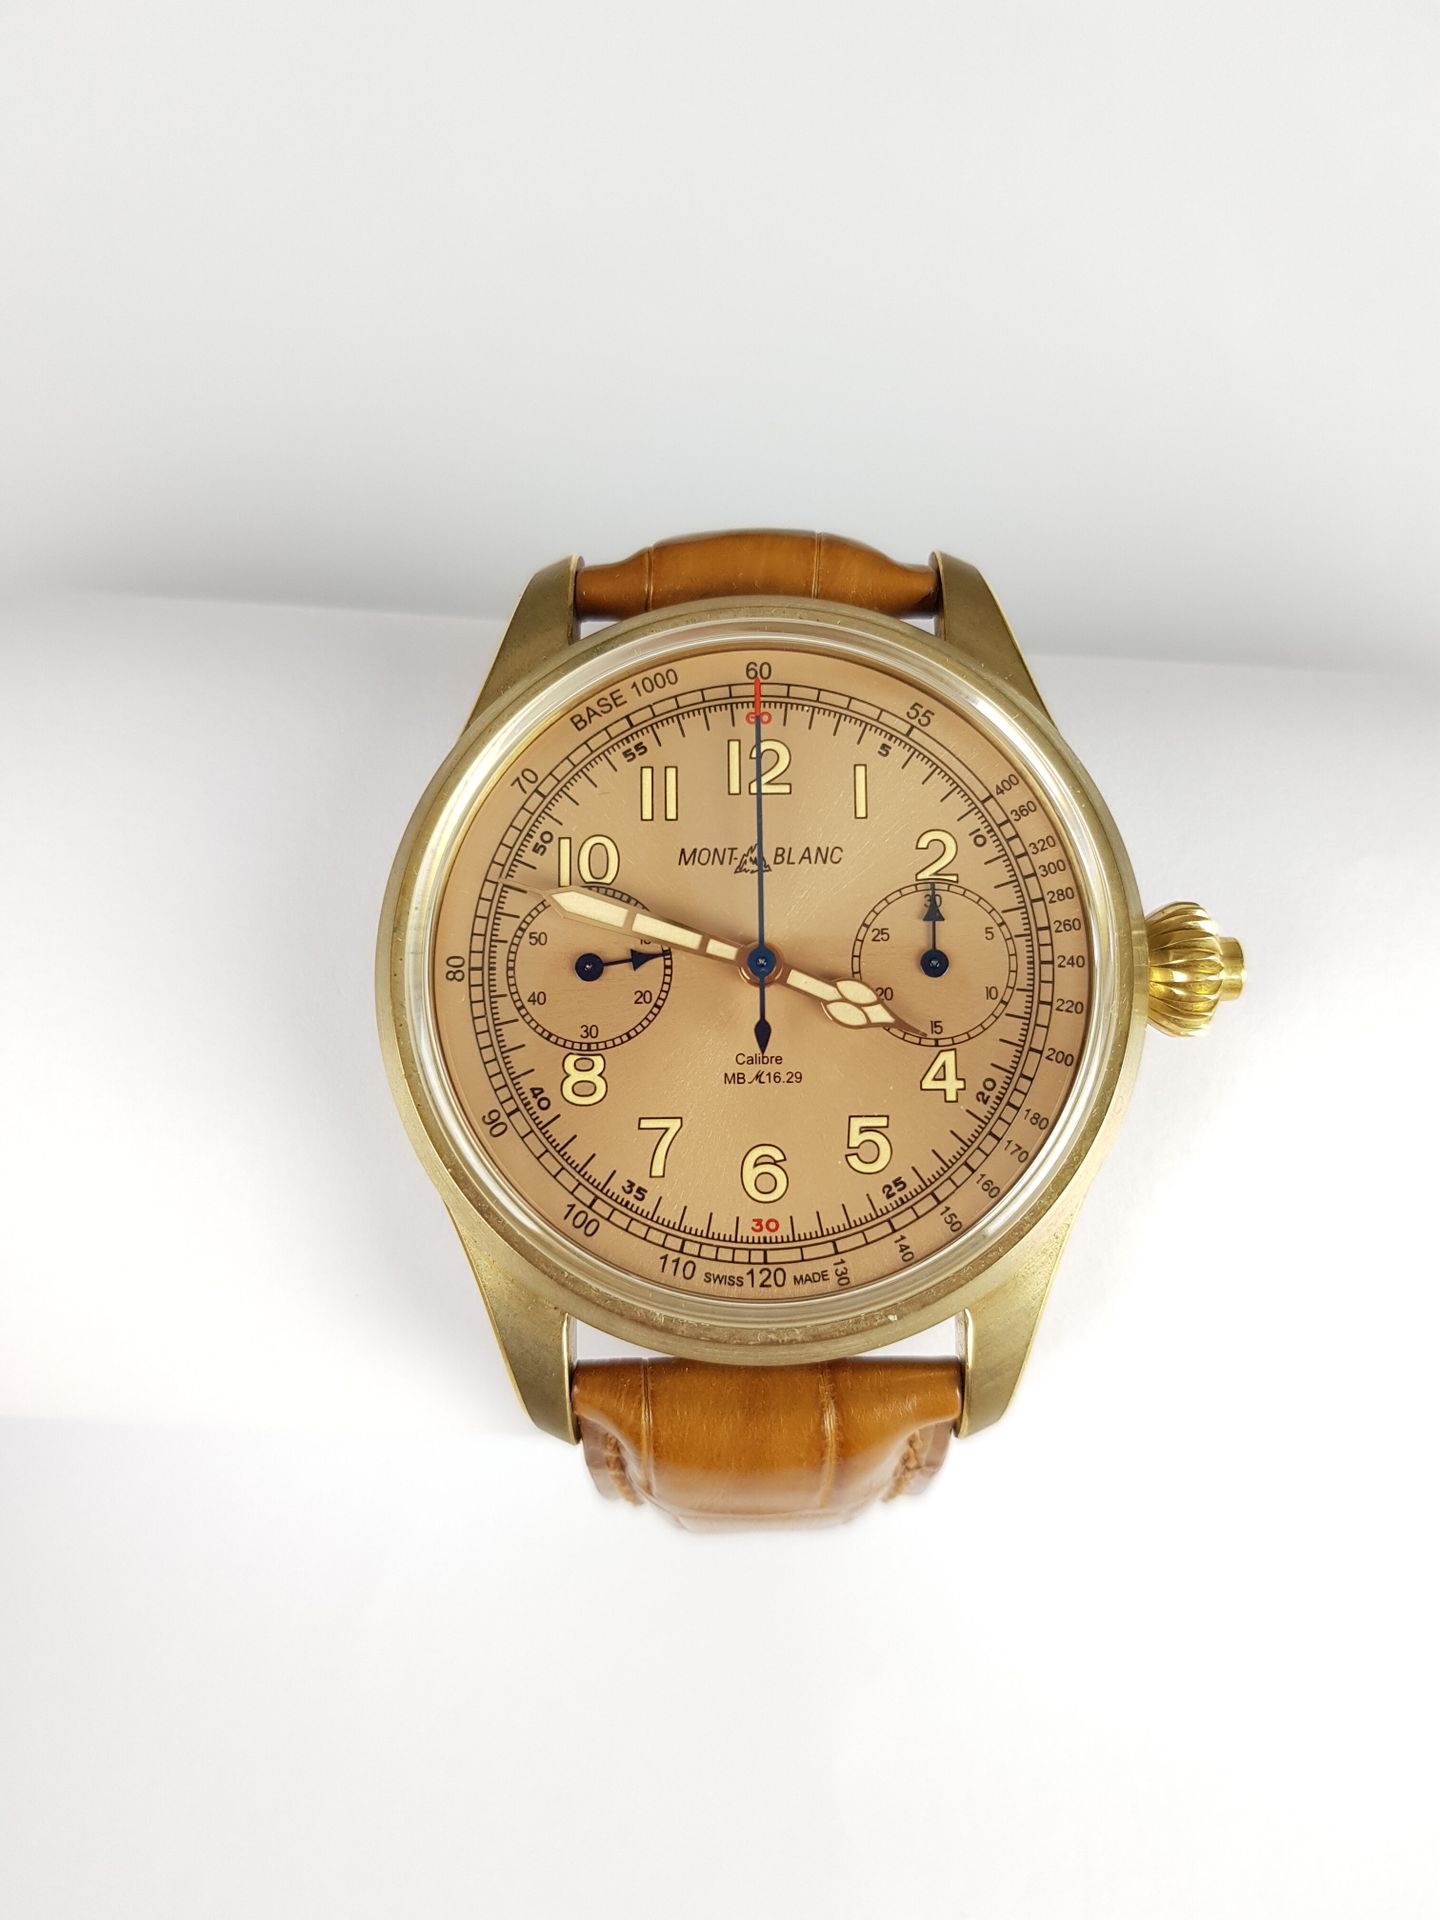 Null Precio inicial: 2 500 €.

MONTBLANC

Minerva

Reloj cronógrafo, monopulsado&hellip;